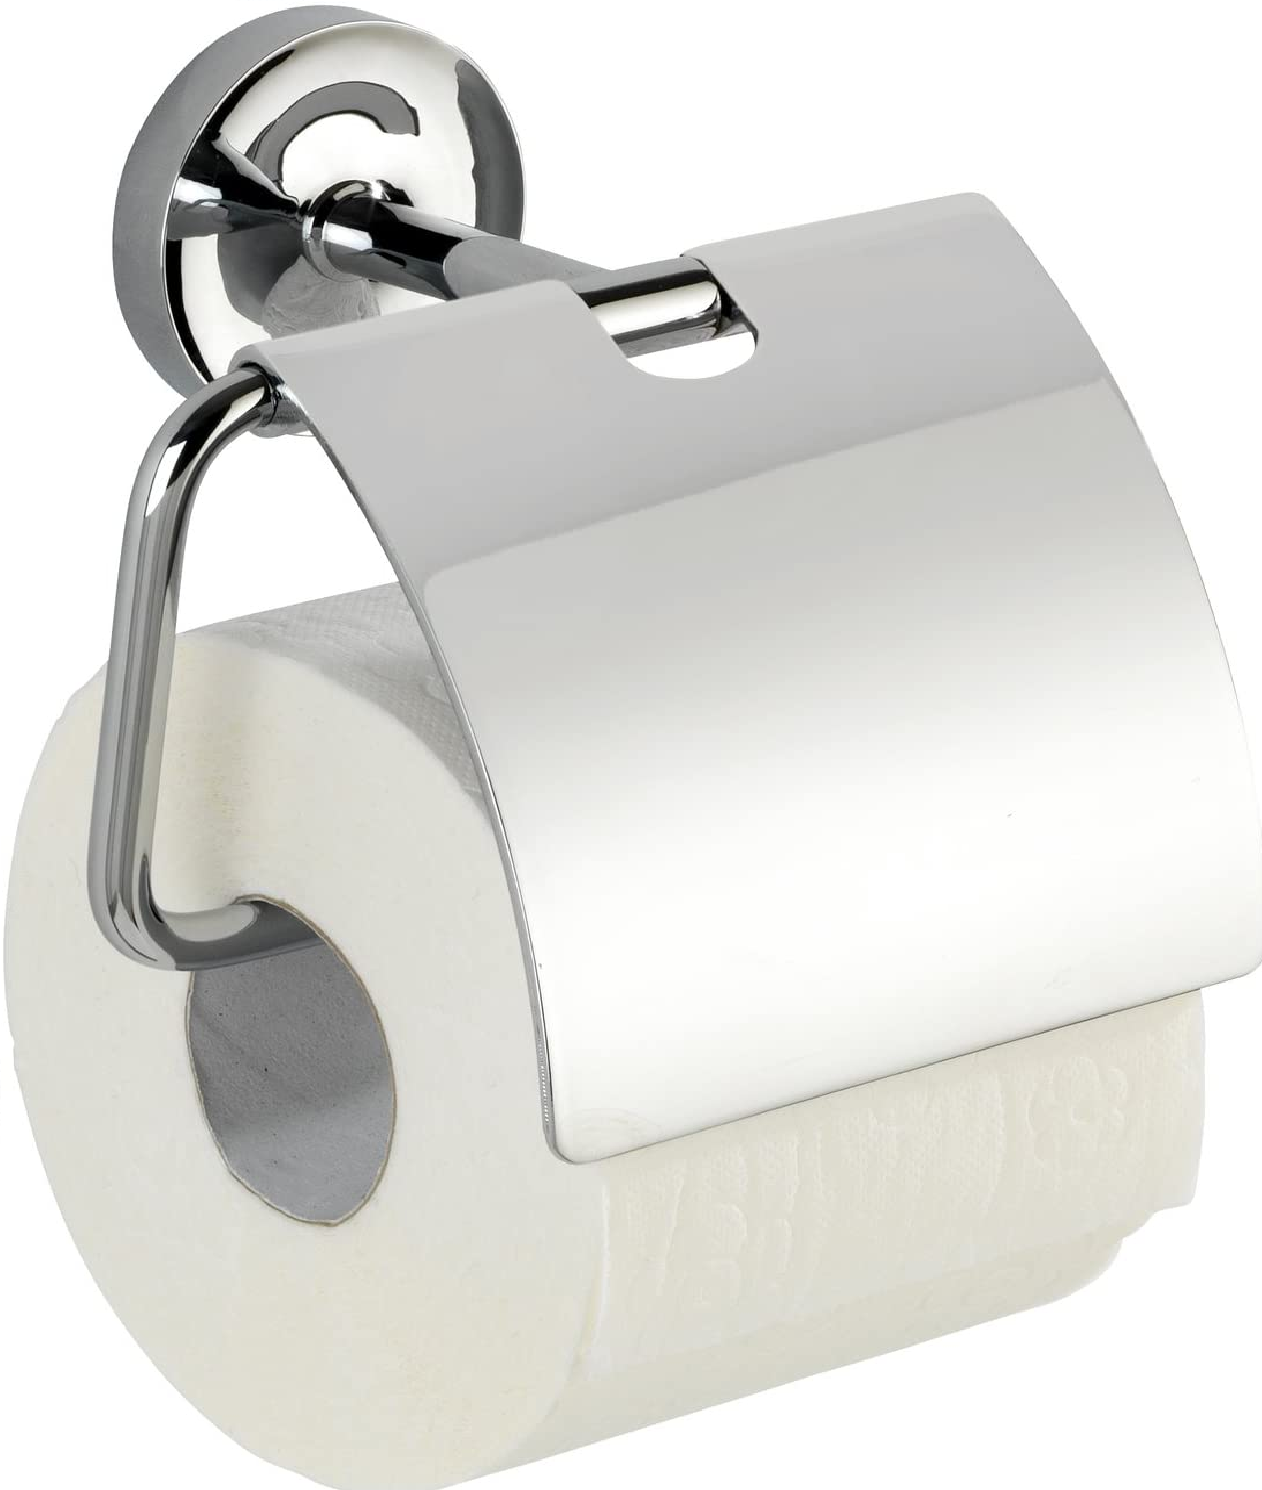 Toilettenpapierhalter mit Deckel Arcole - Papierrollenhalter, Befestigen ohne bohren, Kunststoff (ABS), 14.7 x 13.4 x 8 cm, Chrom